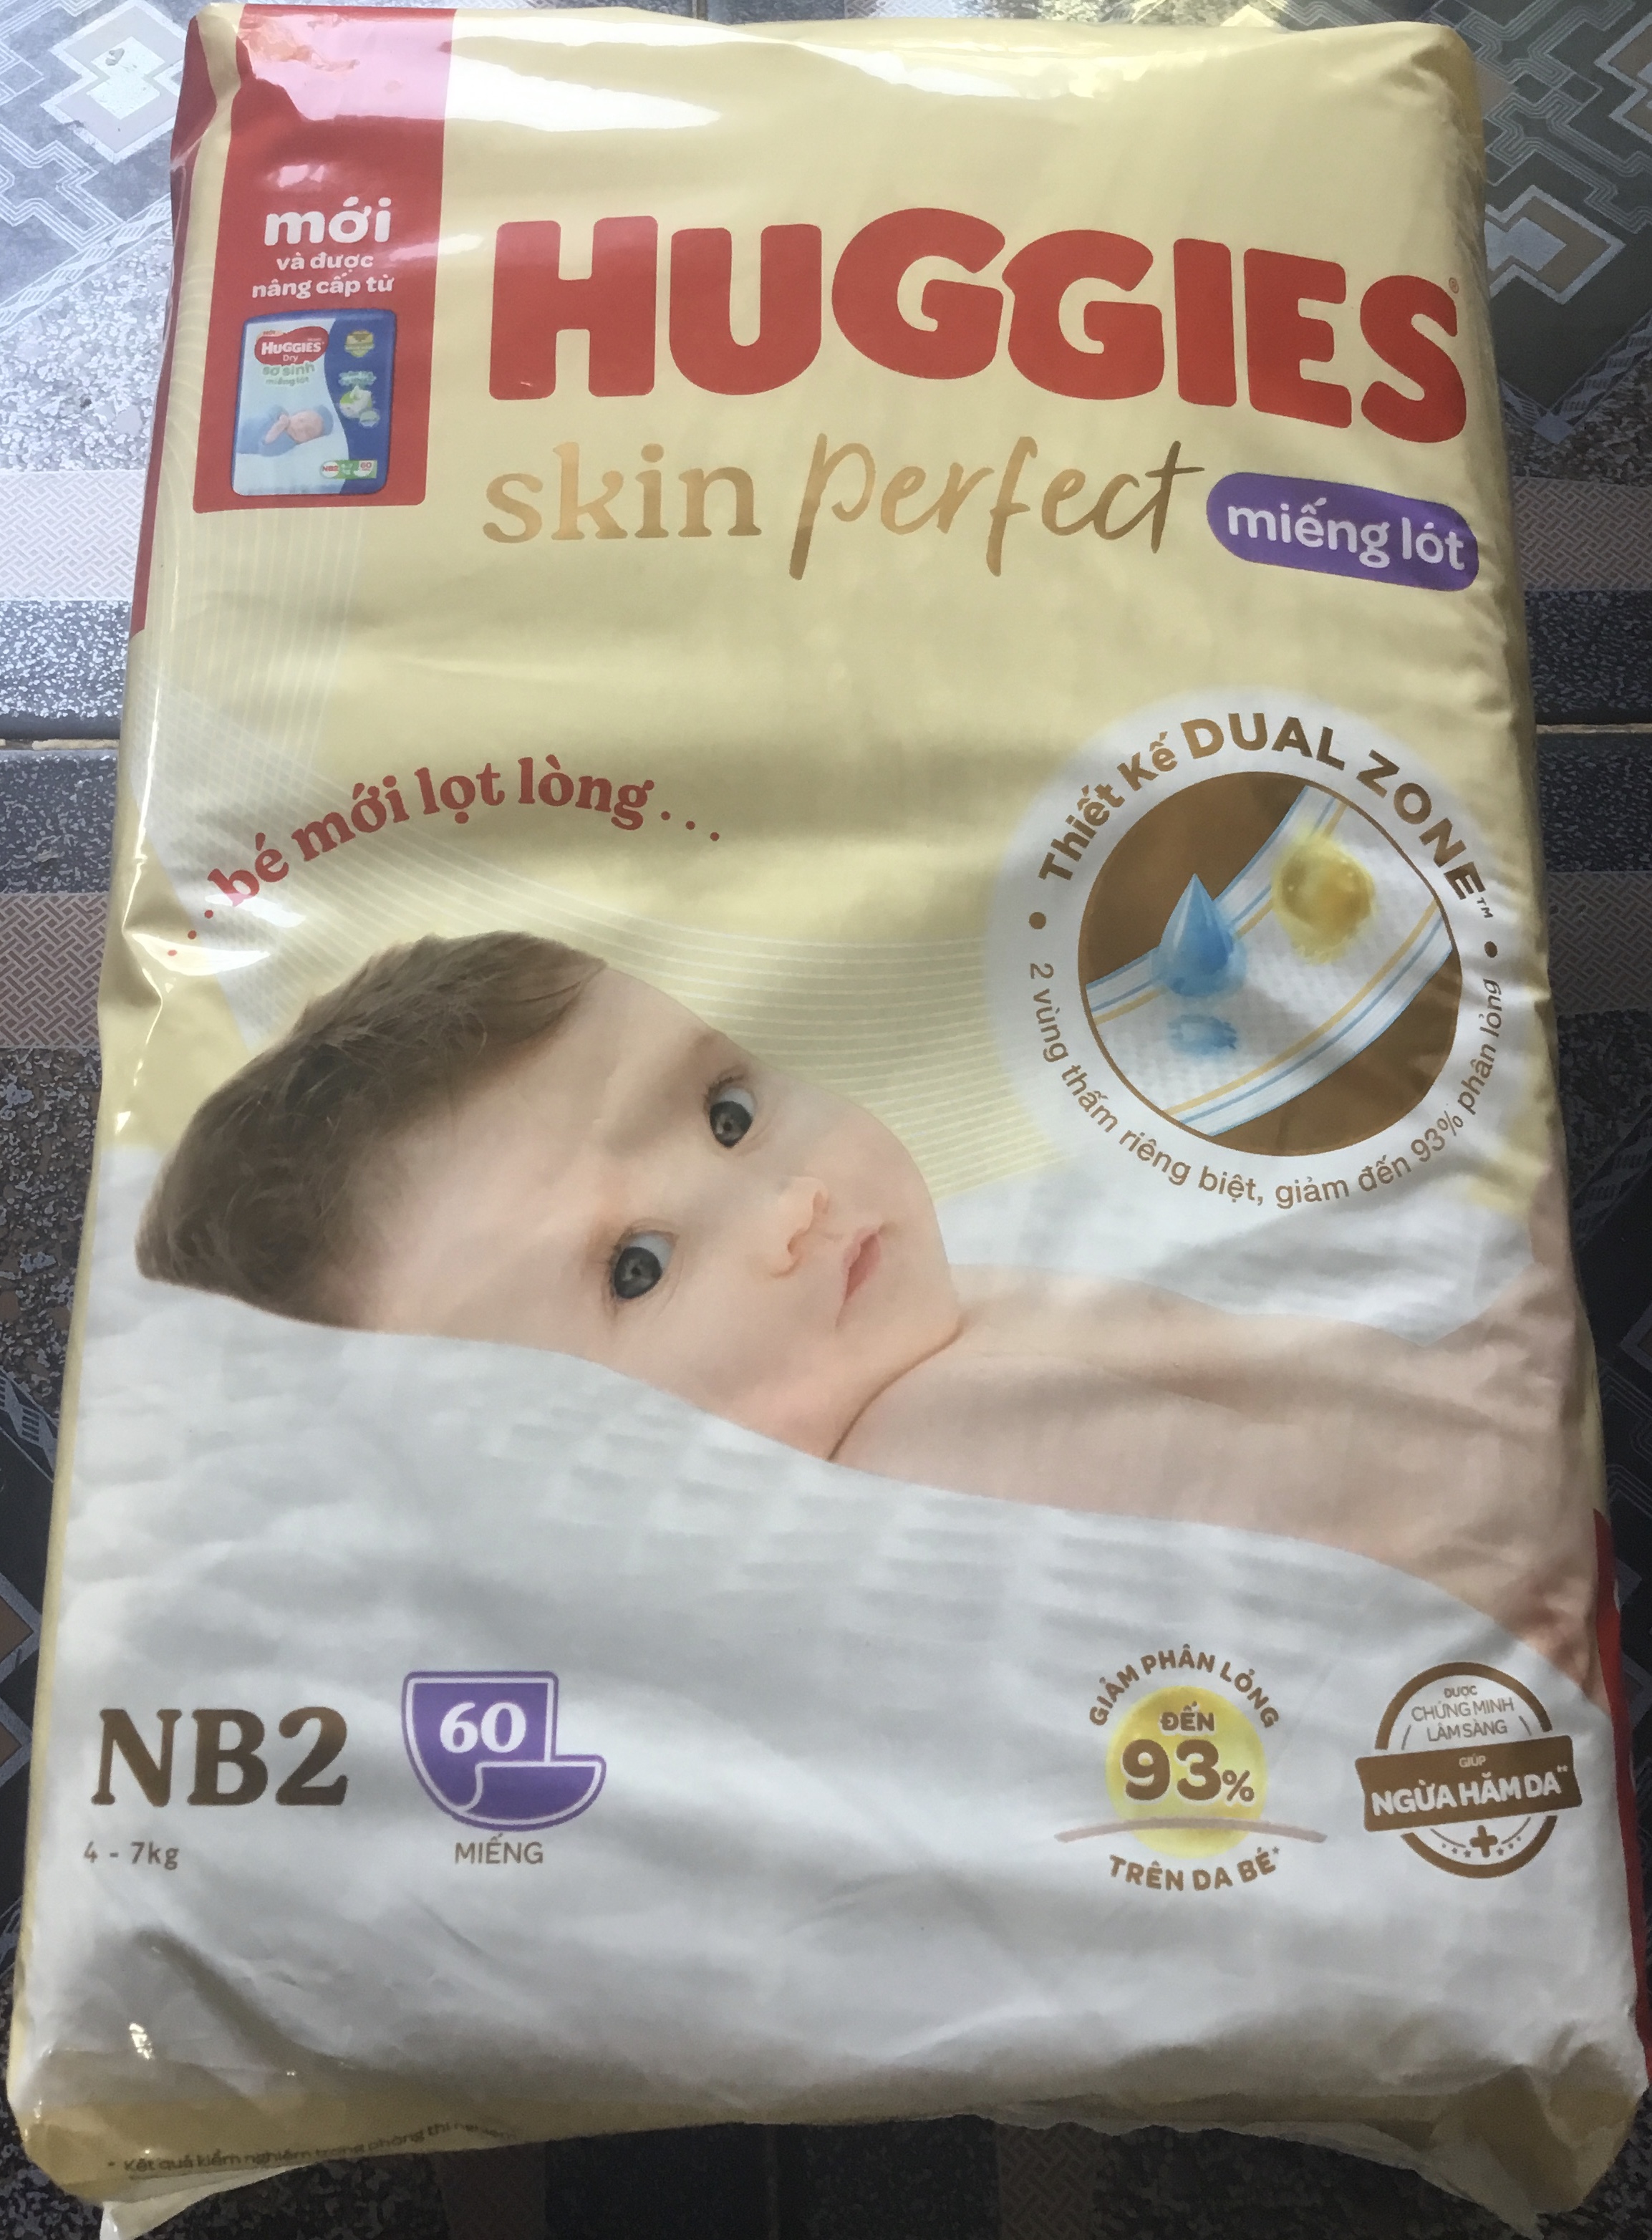 Mẫu Mới - (Dùng Kèm Tã Vải Tam Giác) Miếng Lót Sơ Sinh Huggies Newborn 2 (Huggies NB2 60 Miếng) Skin Perfect Ngừa Hăm Cho Bé Từ 4-8kg - Miếng lót cho bé Huggies